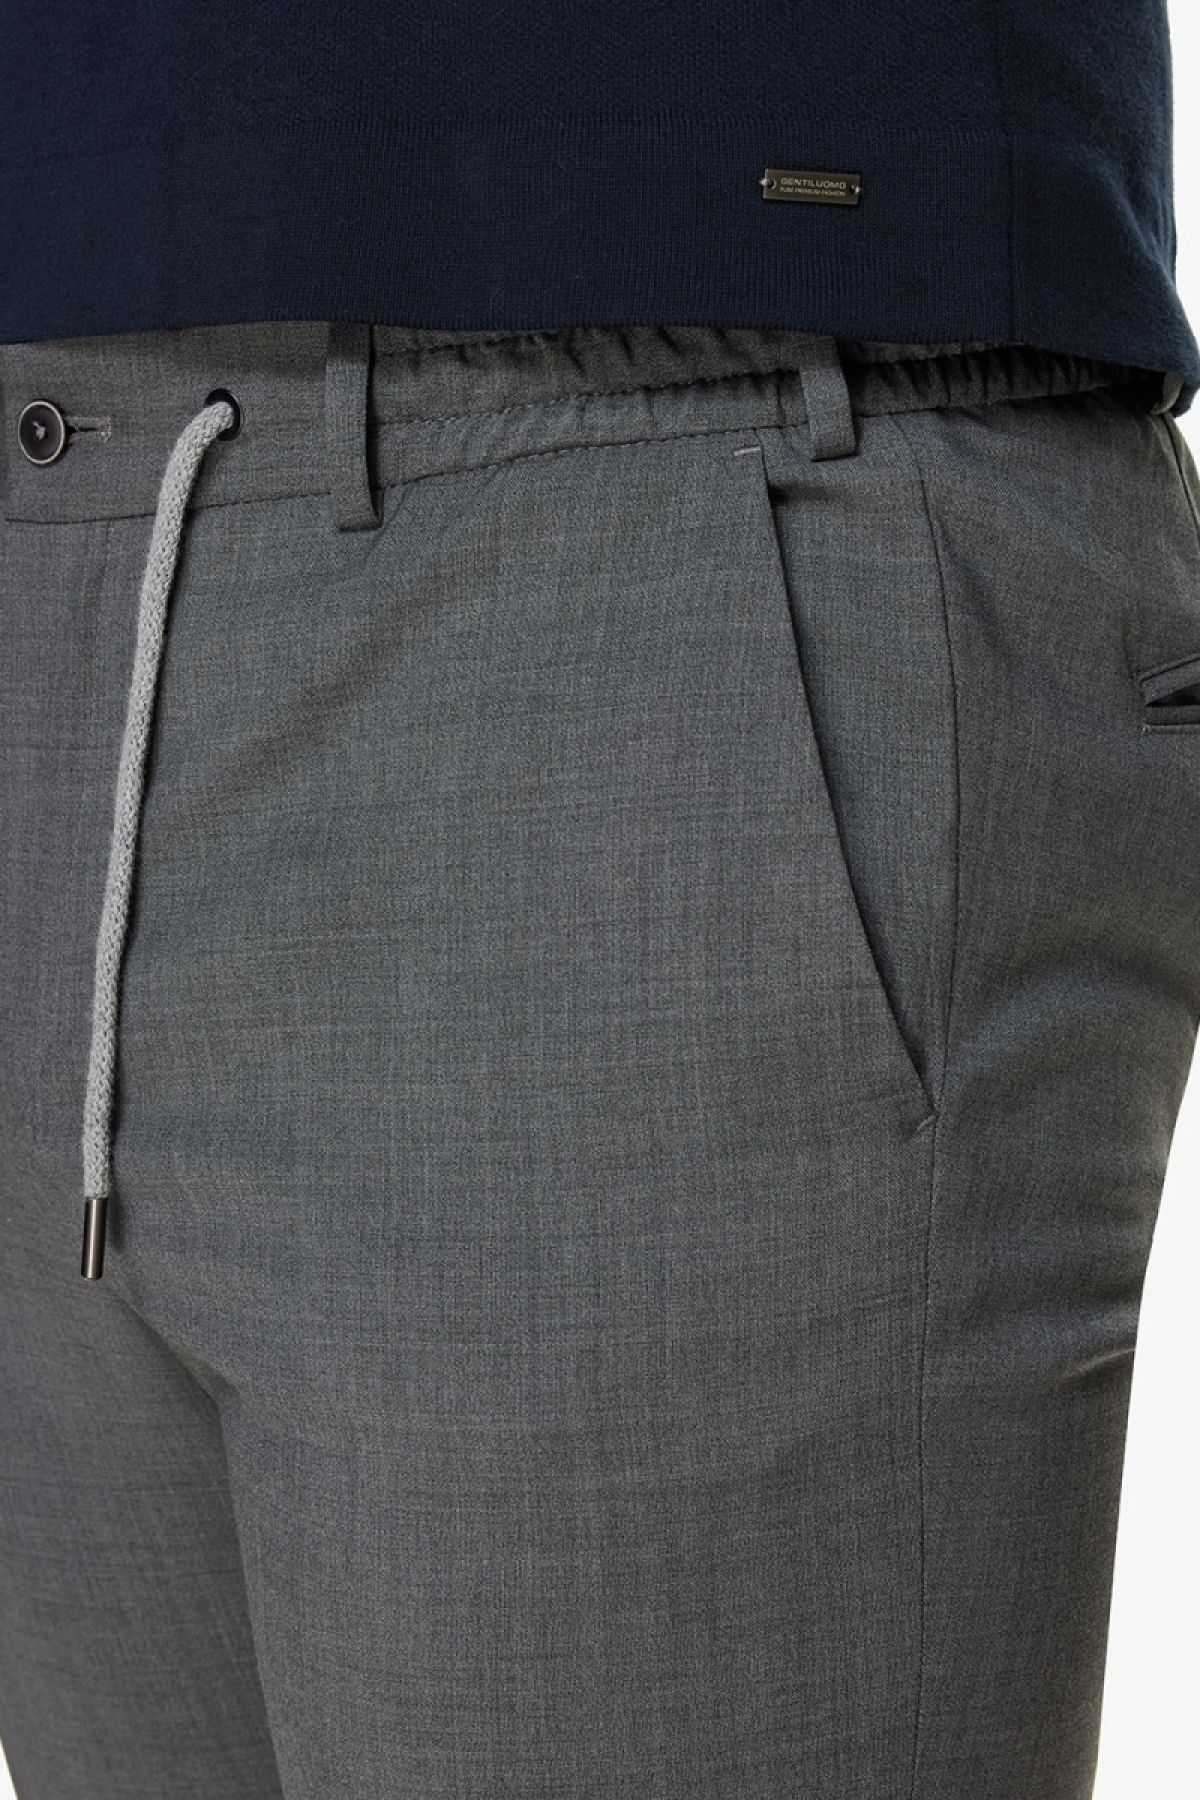 B-dynamic pantalon grijs